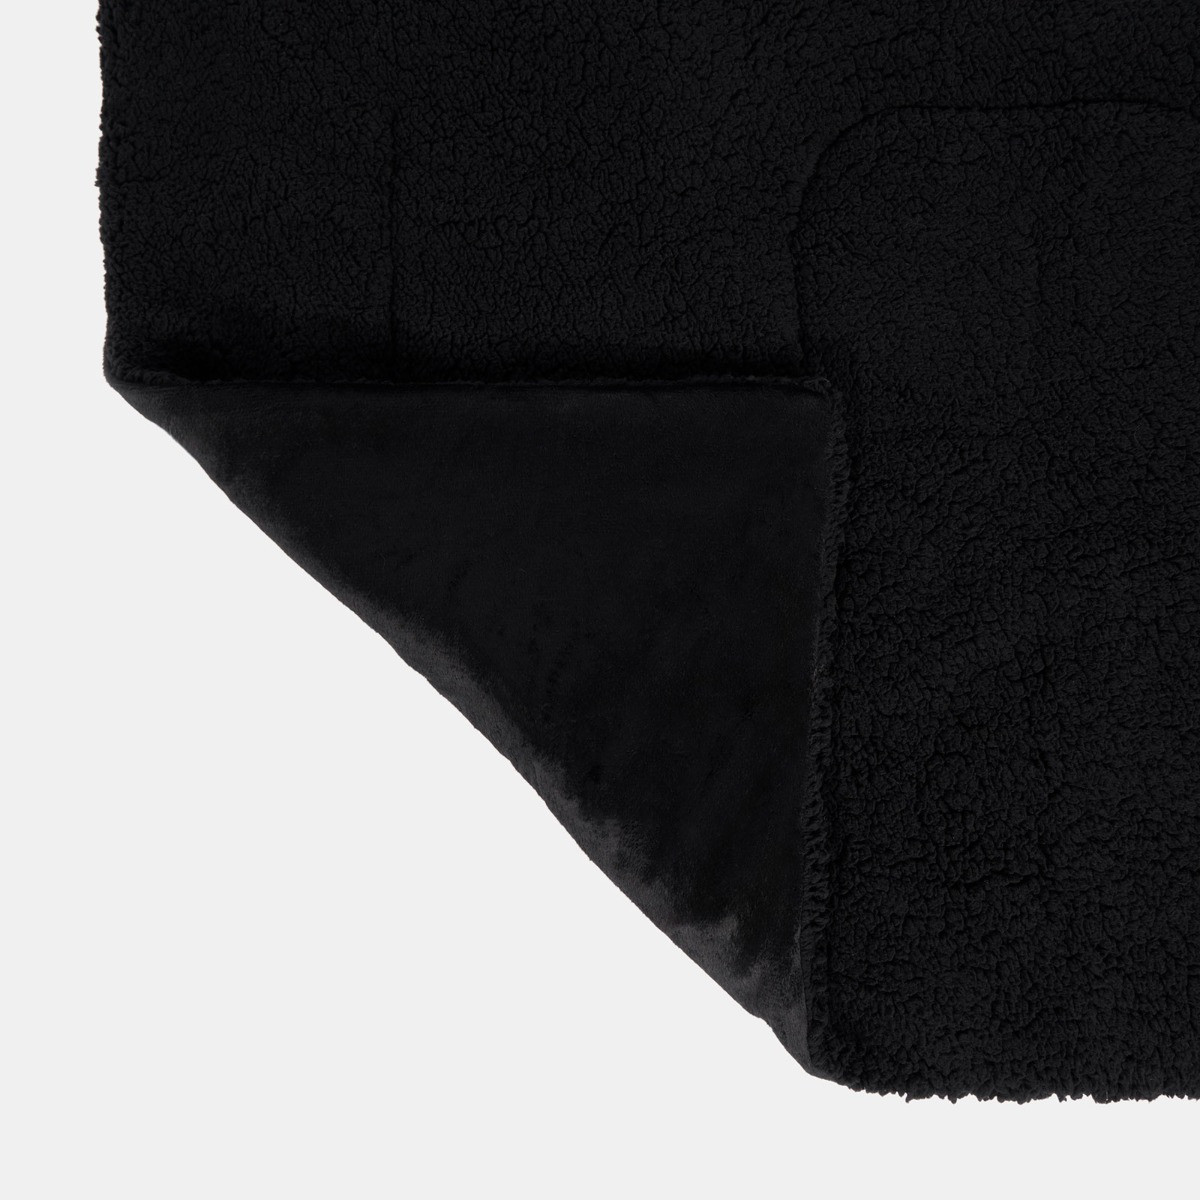 Brentfords Sherpa Soft Quilted Pet Blanket - Black>